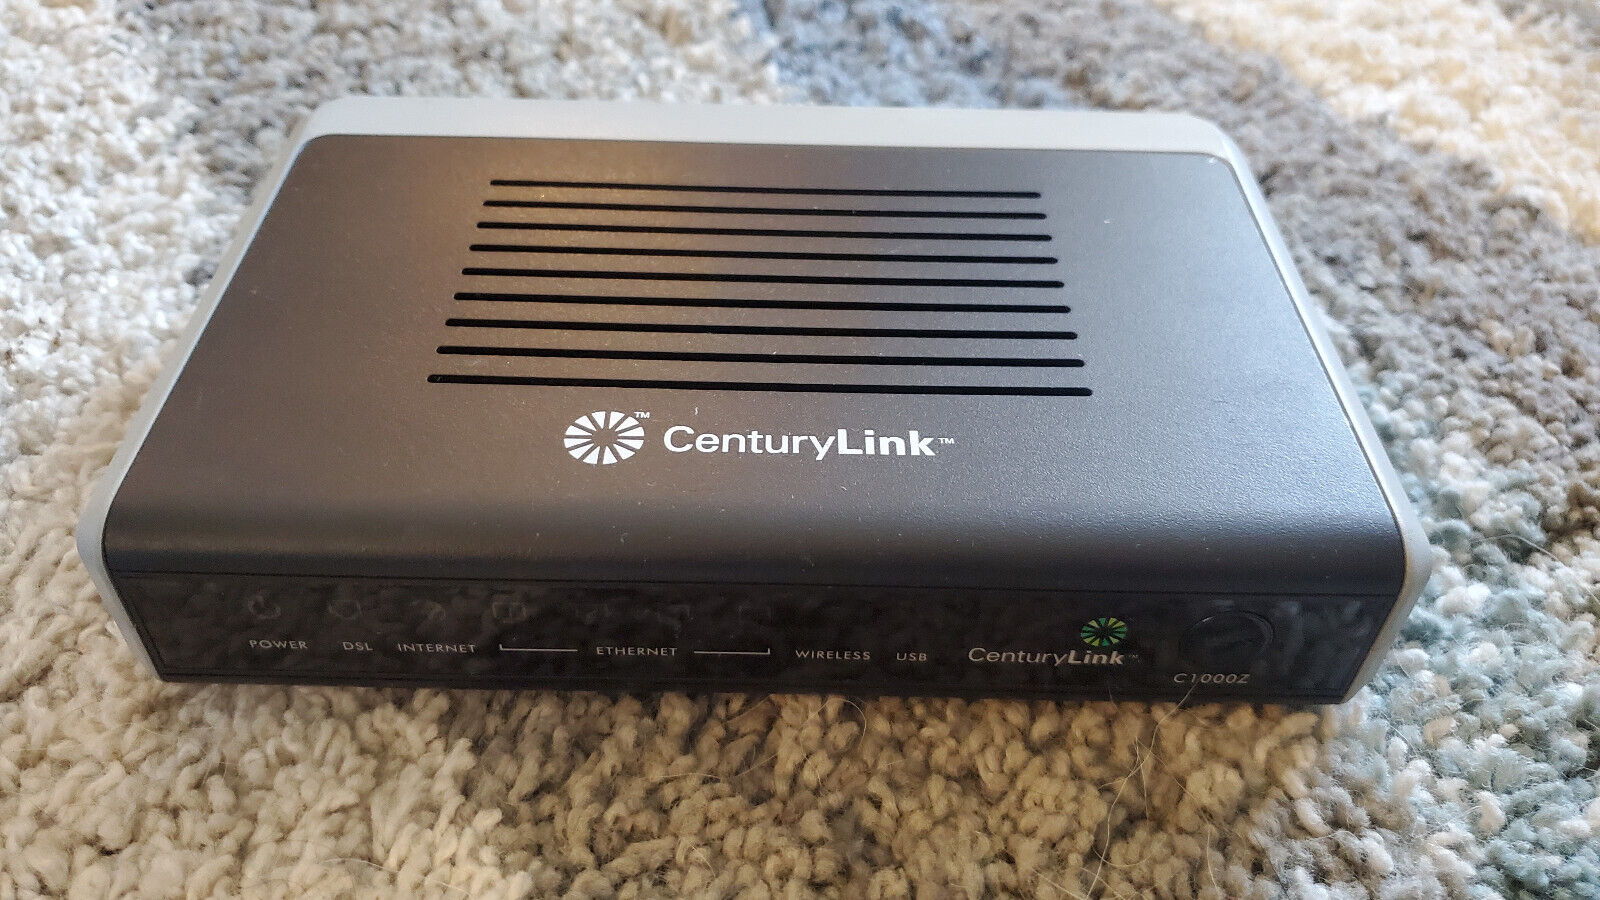 Centurylink Zyxel C1000z VDSL2 DSL 4-Port Modem Wireless Router